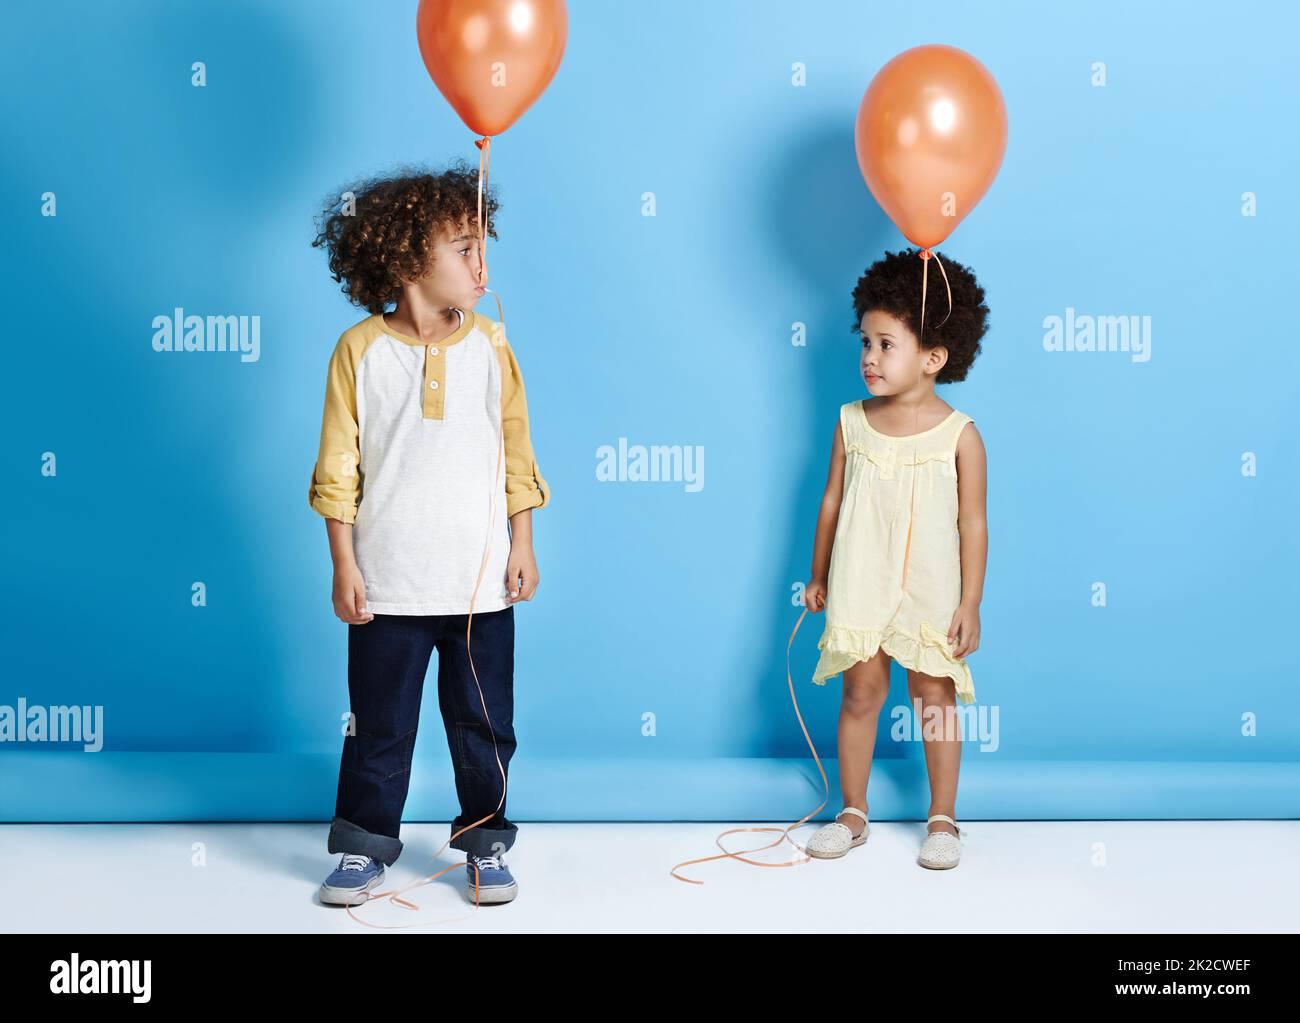 Schau, keine Hände. Aufnahme eines kleinen Mädchens und Jungen, die einen Ballon auf einem blauen Hintergrund halten. Stockfoto